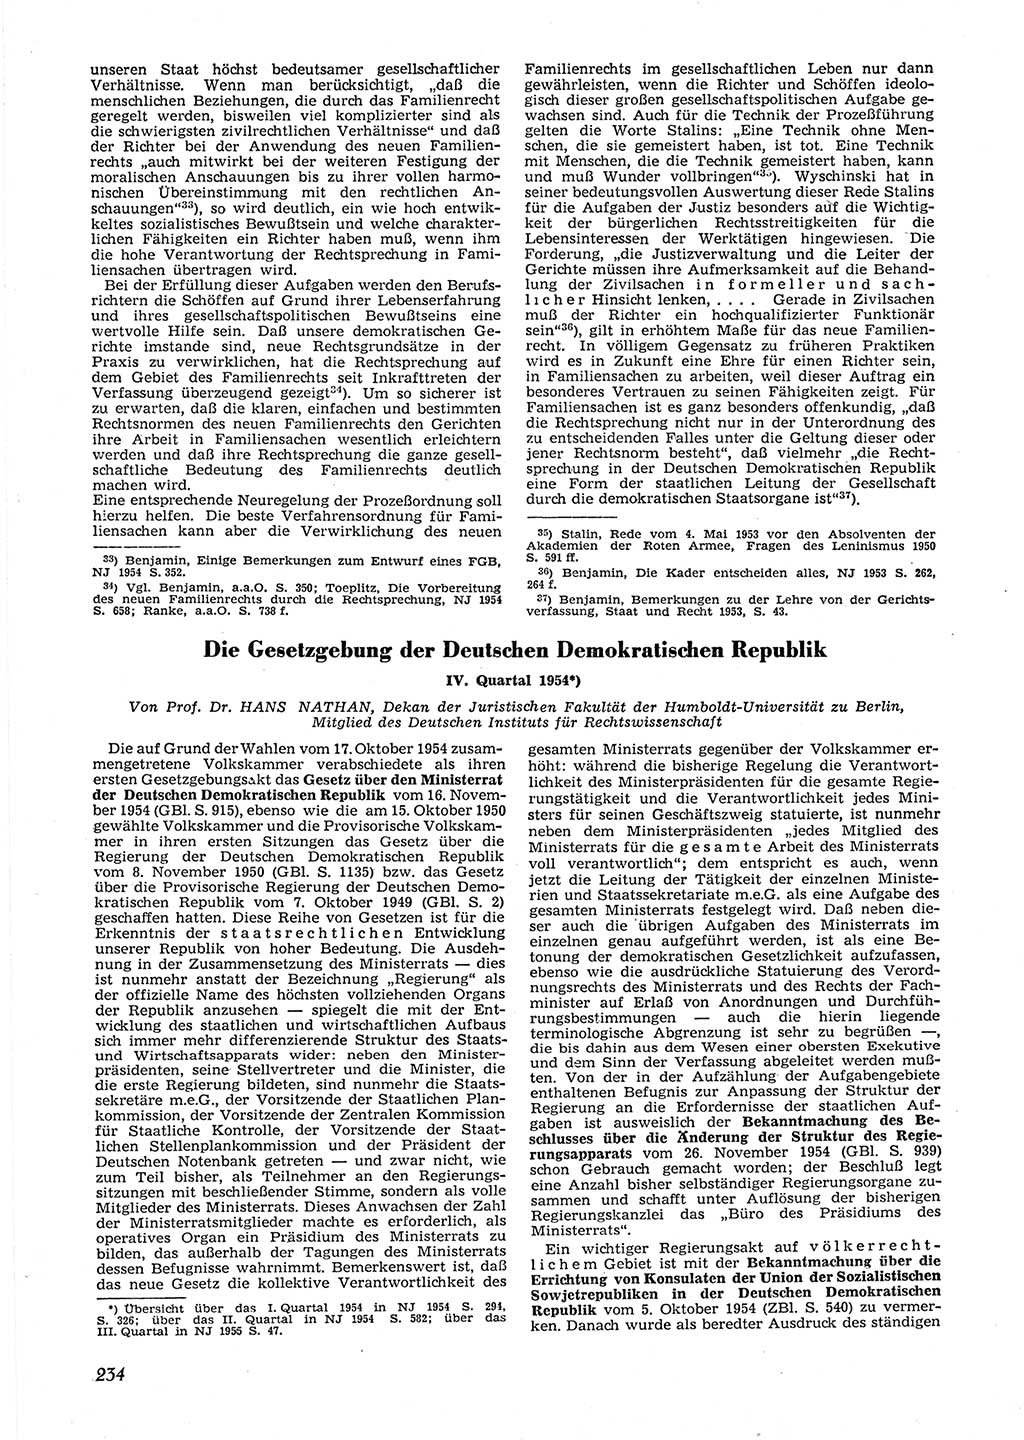 Neue Justiz (NJ), Zeitschrift für Recht und Rechtswissenschaft [Deutsche Demokratische Republik (DDR)], 9. Jahrgang 1955, Seite 234 (NJ DDR 1955, S. 234)